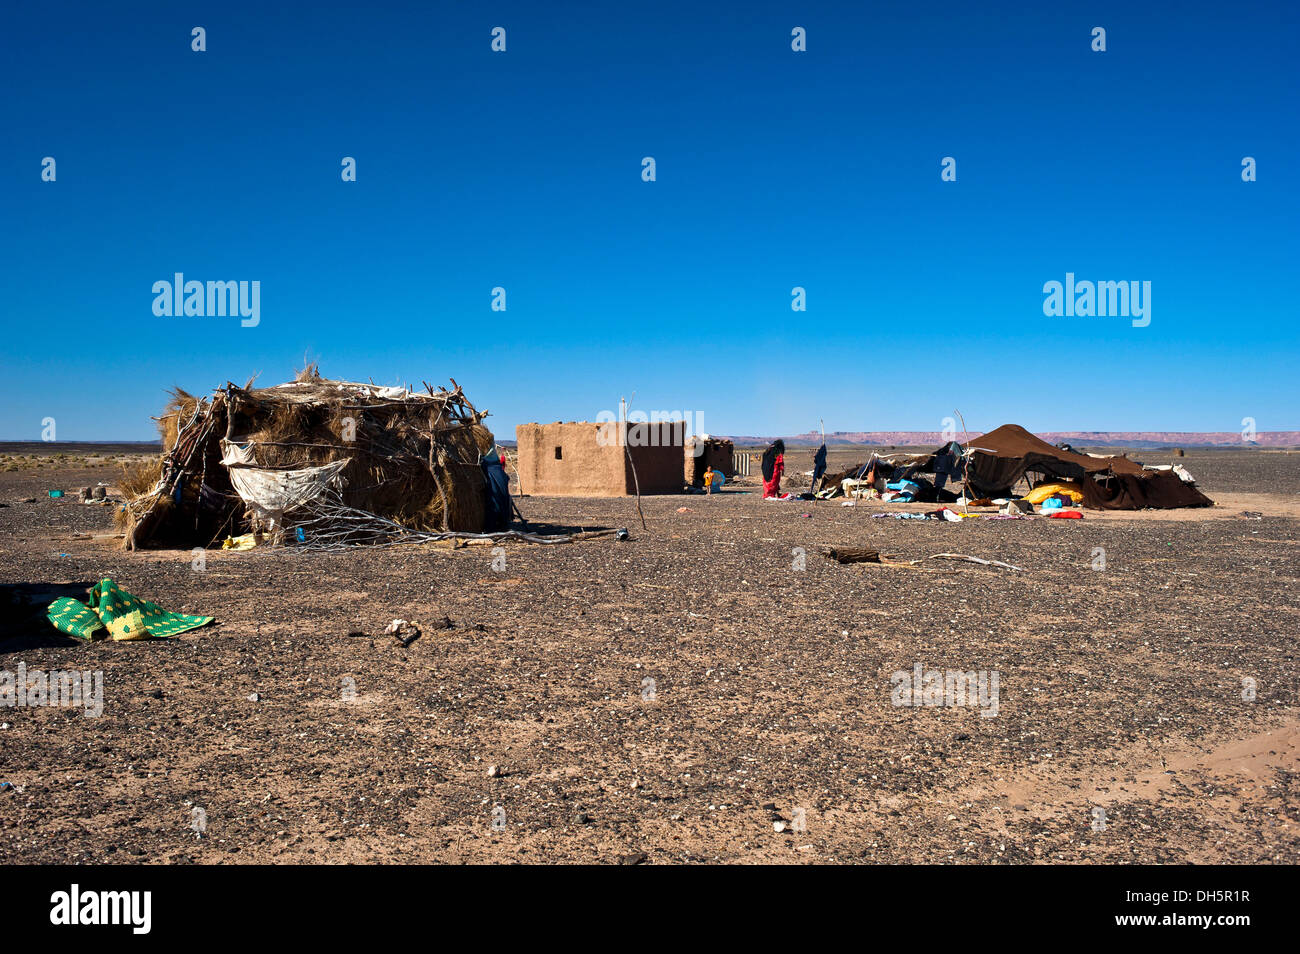 Tenda nomade e abitazioni di una famiglia di nomadi su un altopiano deserto pietroso, hamada, Erg Chebbi, sud del Marocco, Marocco, Africa Foto Stock